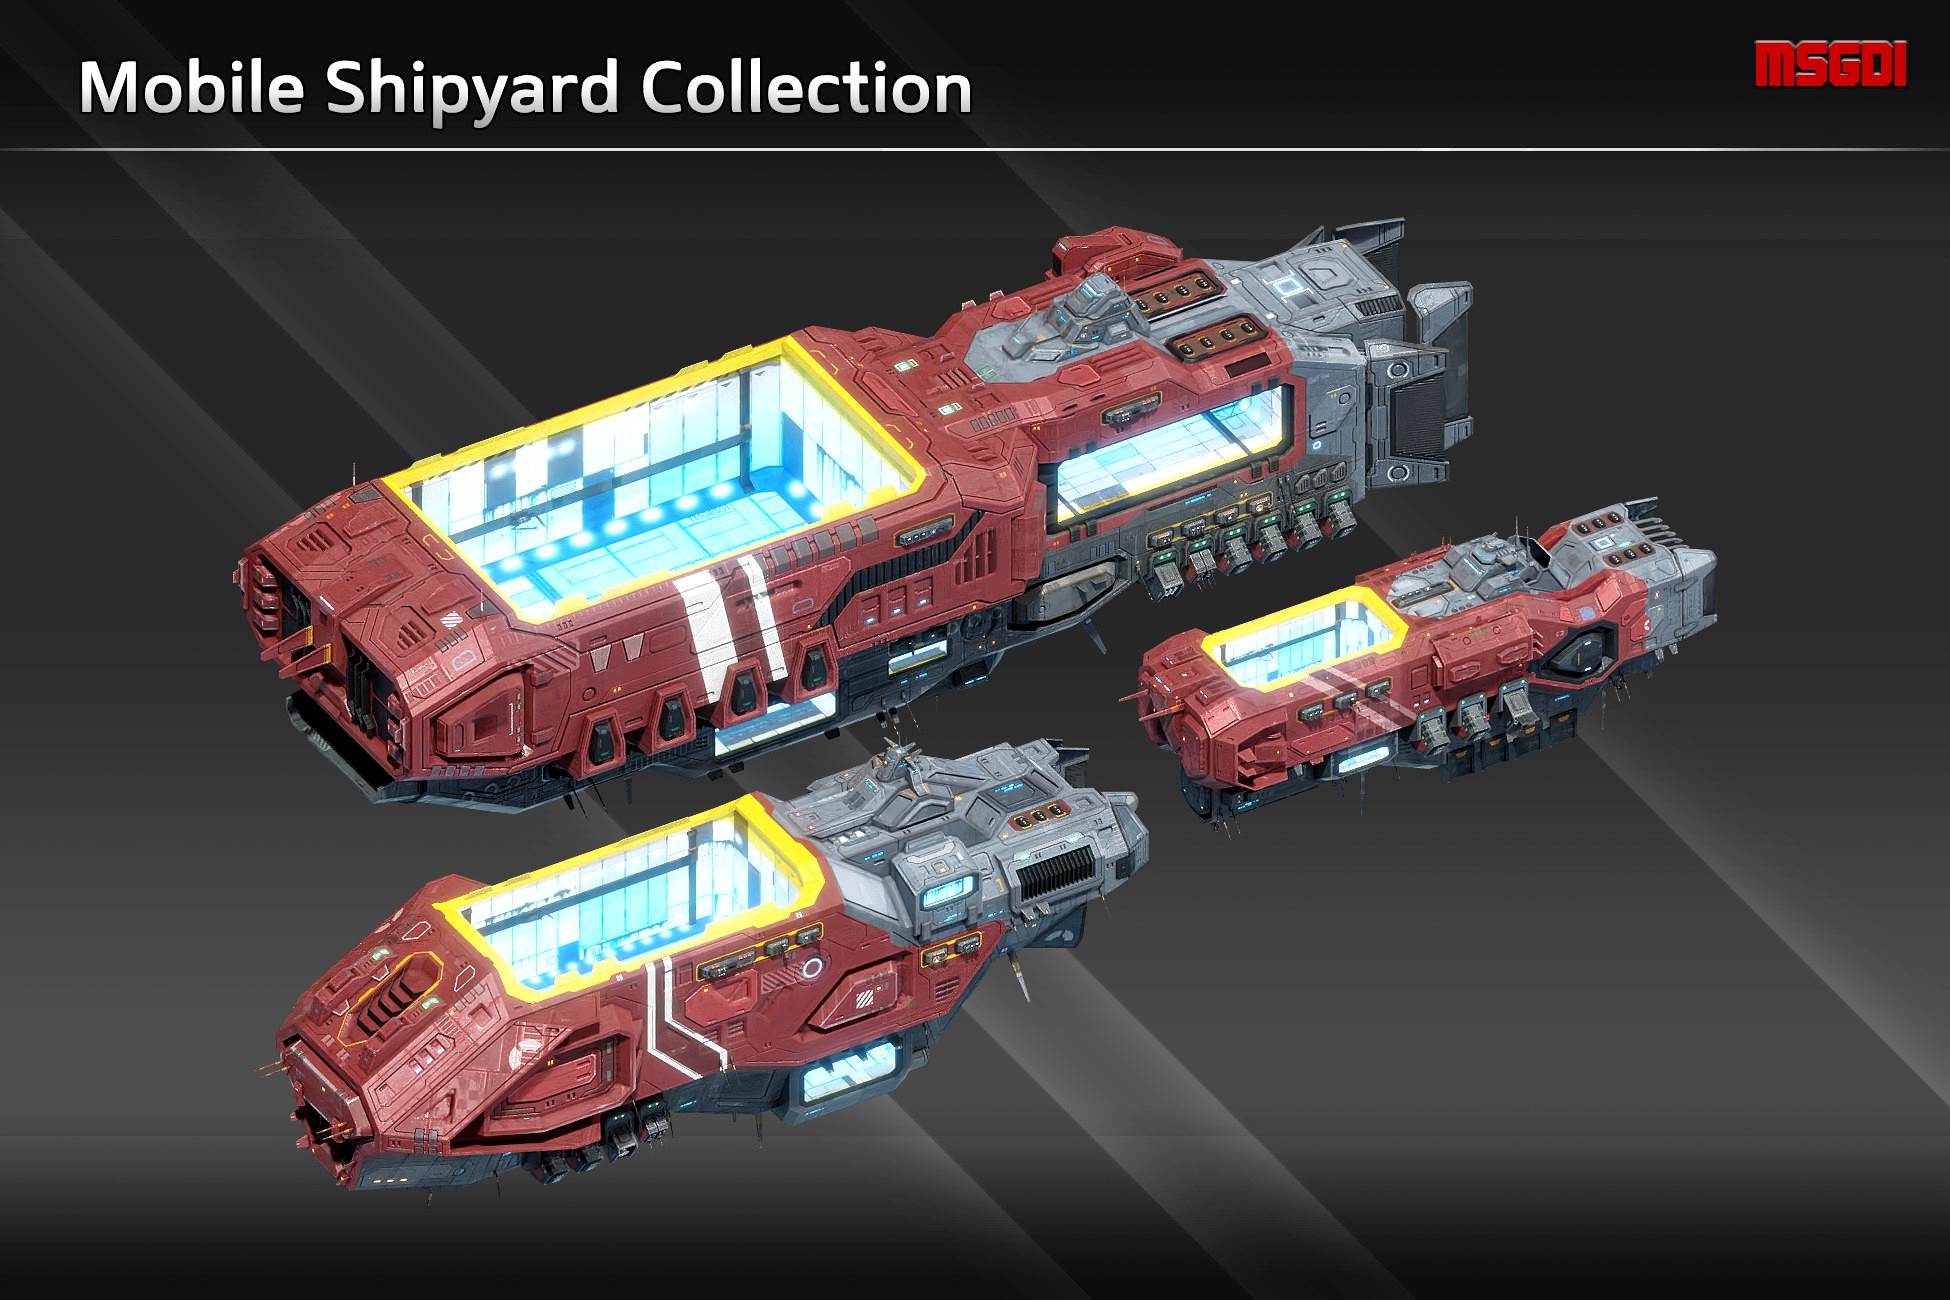 Scifi Mobile Shipyard Collection